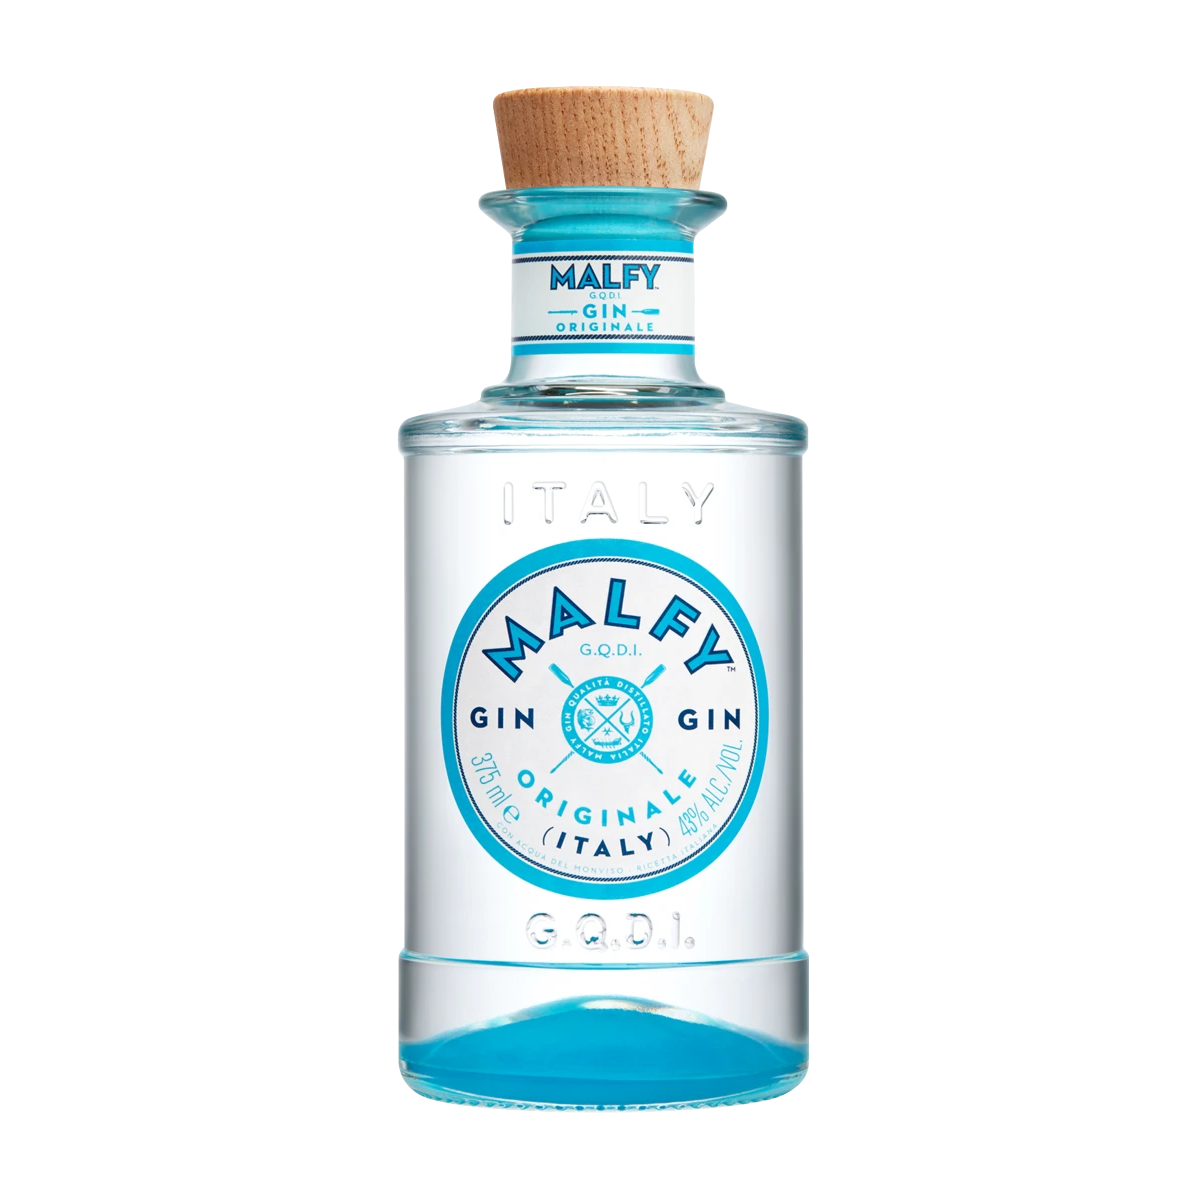 Malfy Gin ORIGINALE 41% Vol. 0,7l